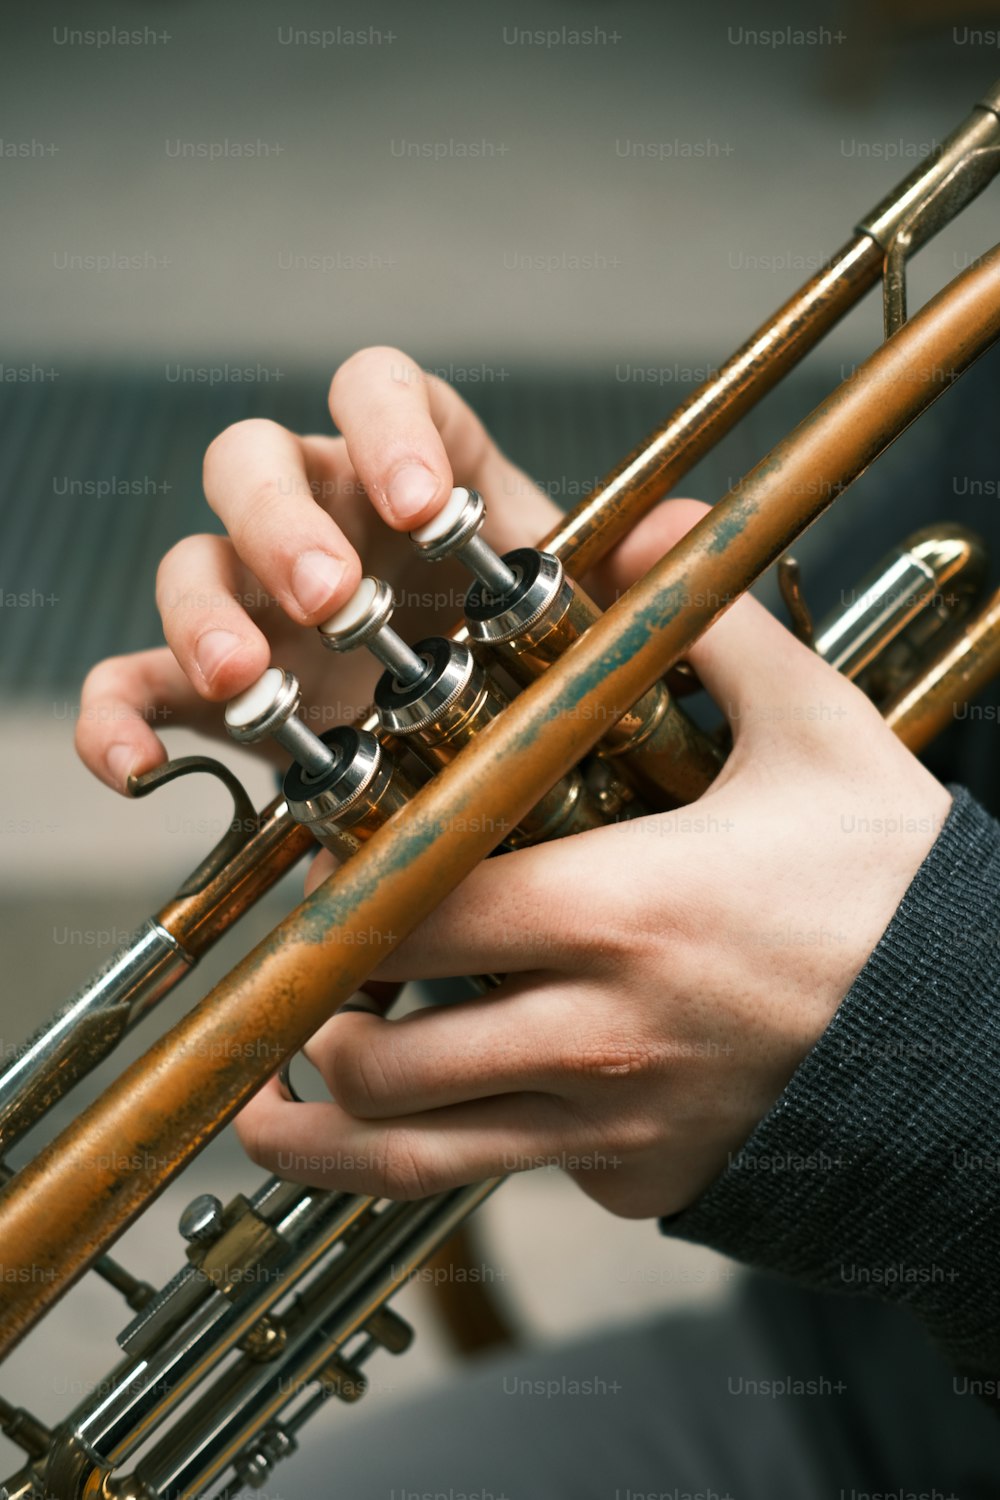 트럼펫을 연주하는 사람의 클로즈업